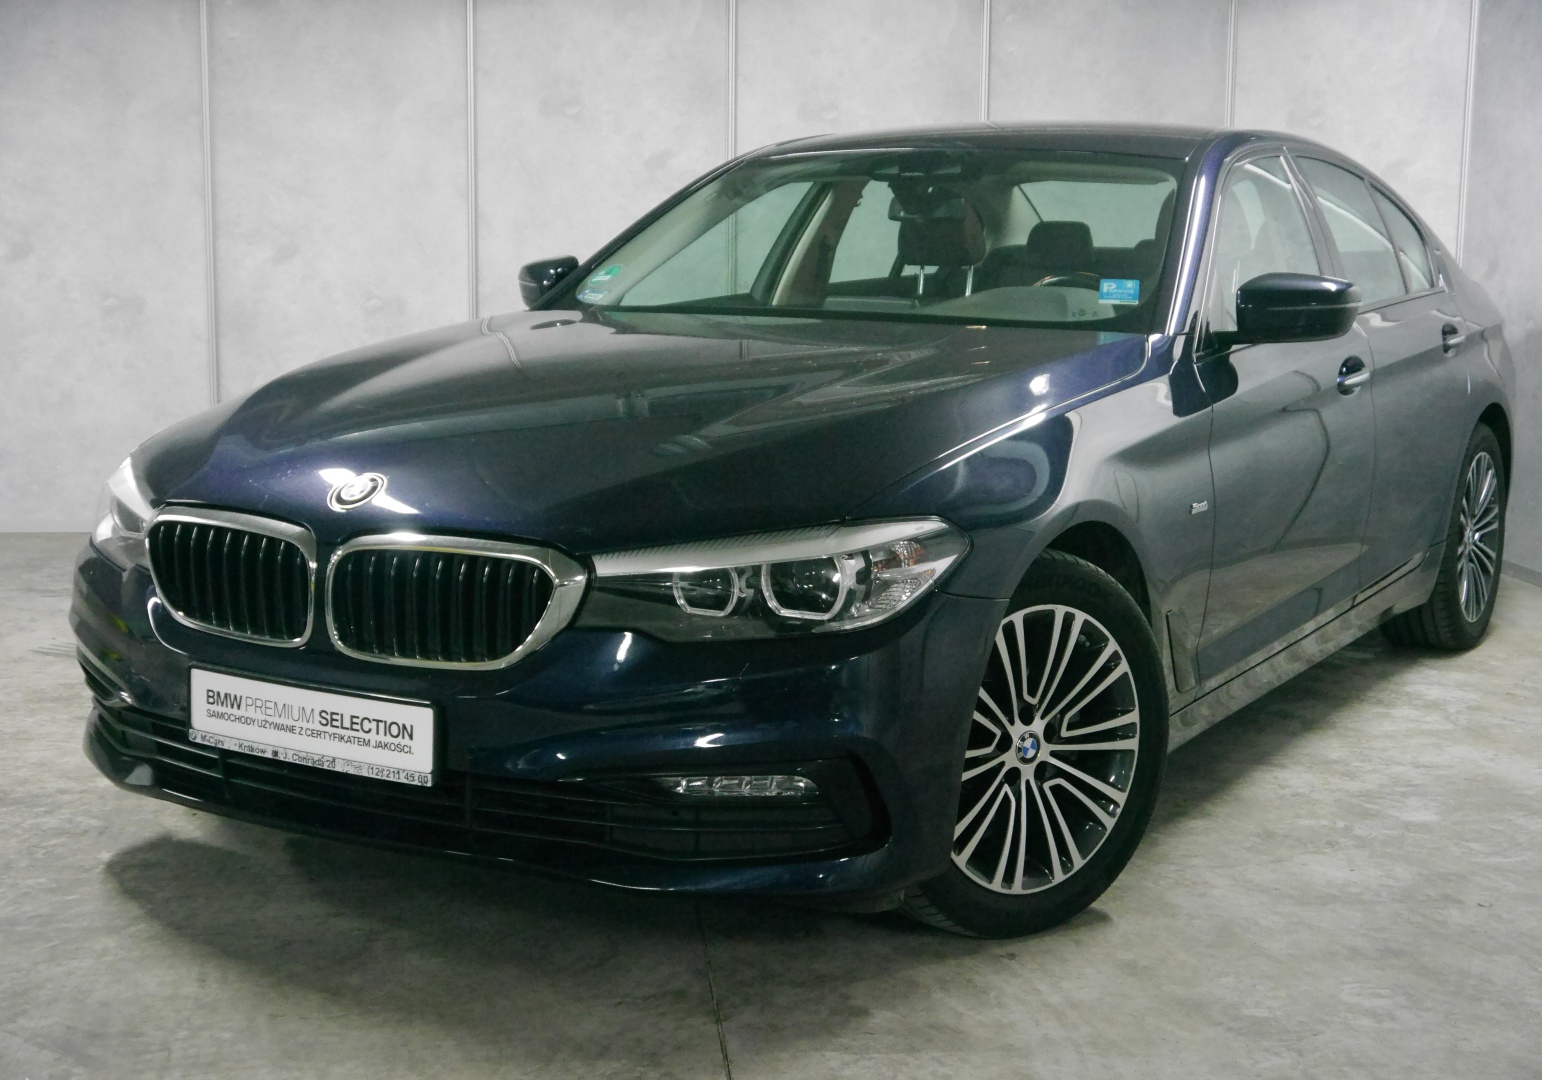 BMW Seria 5 Limuzyna Niebieski Dealer BMW MCars Nowy Sącz